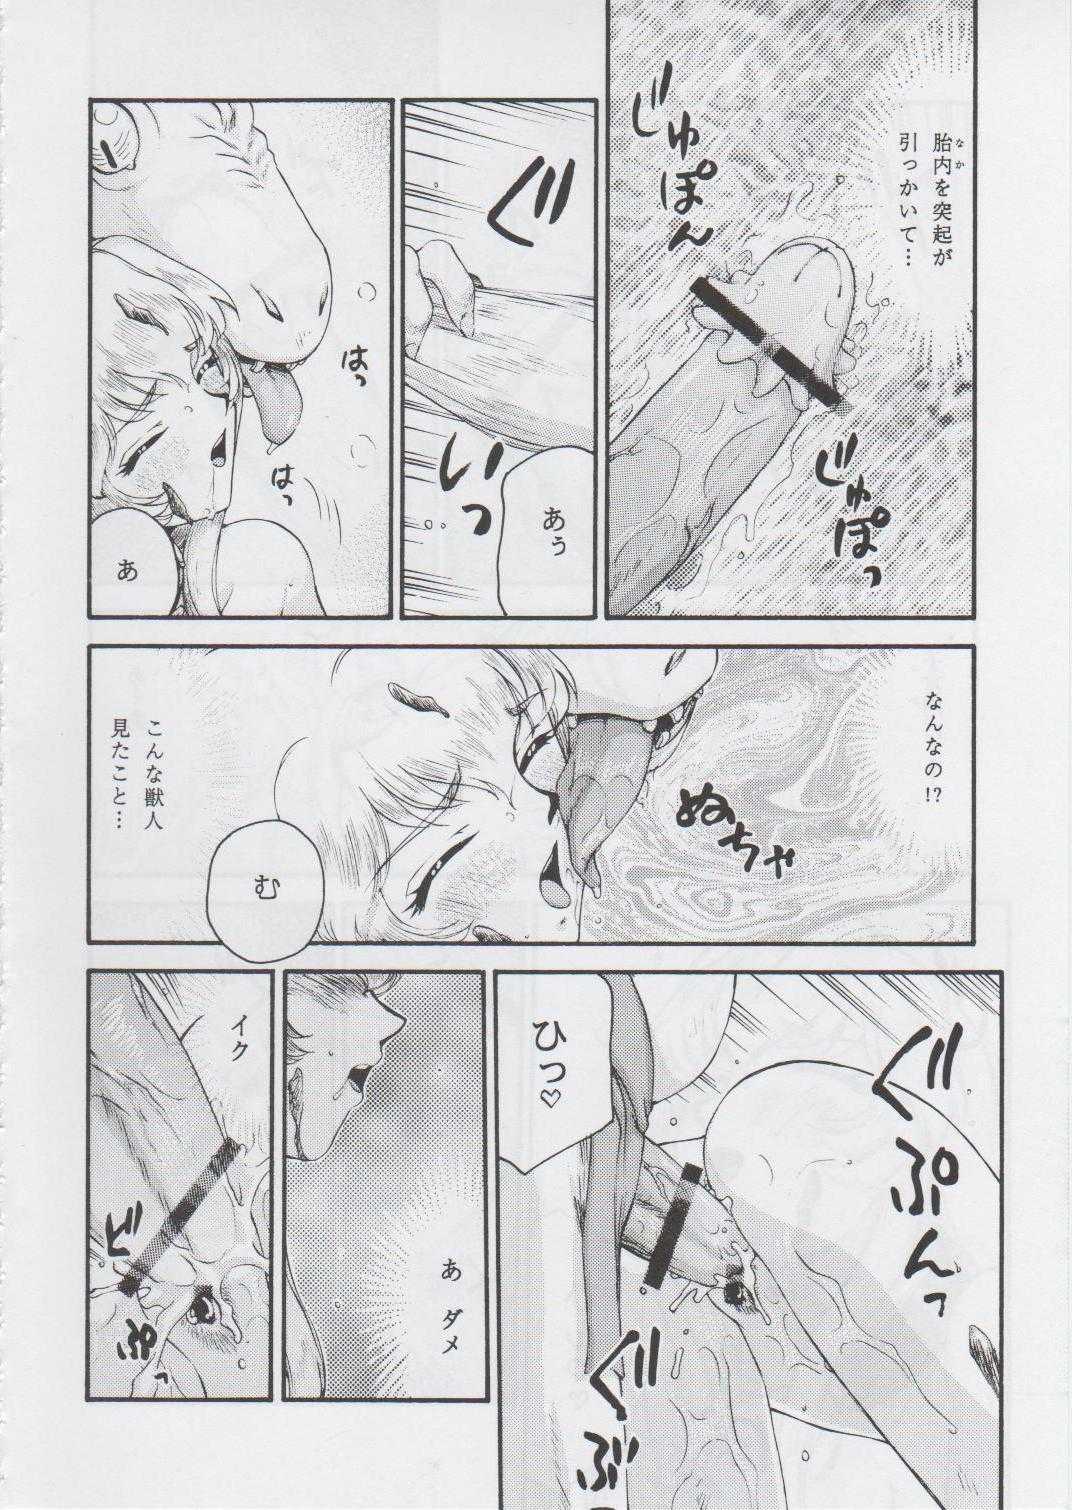 [Hajime Taira] [2006-12-31] Dragon Blood! 14 